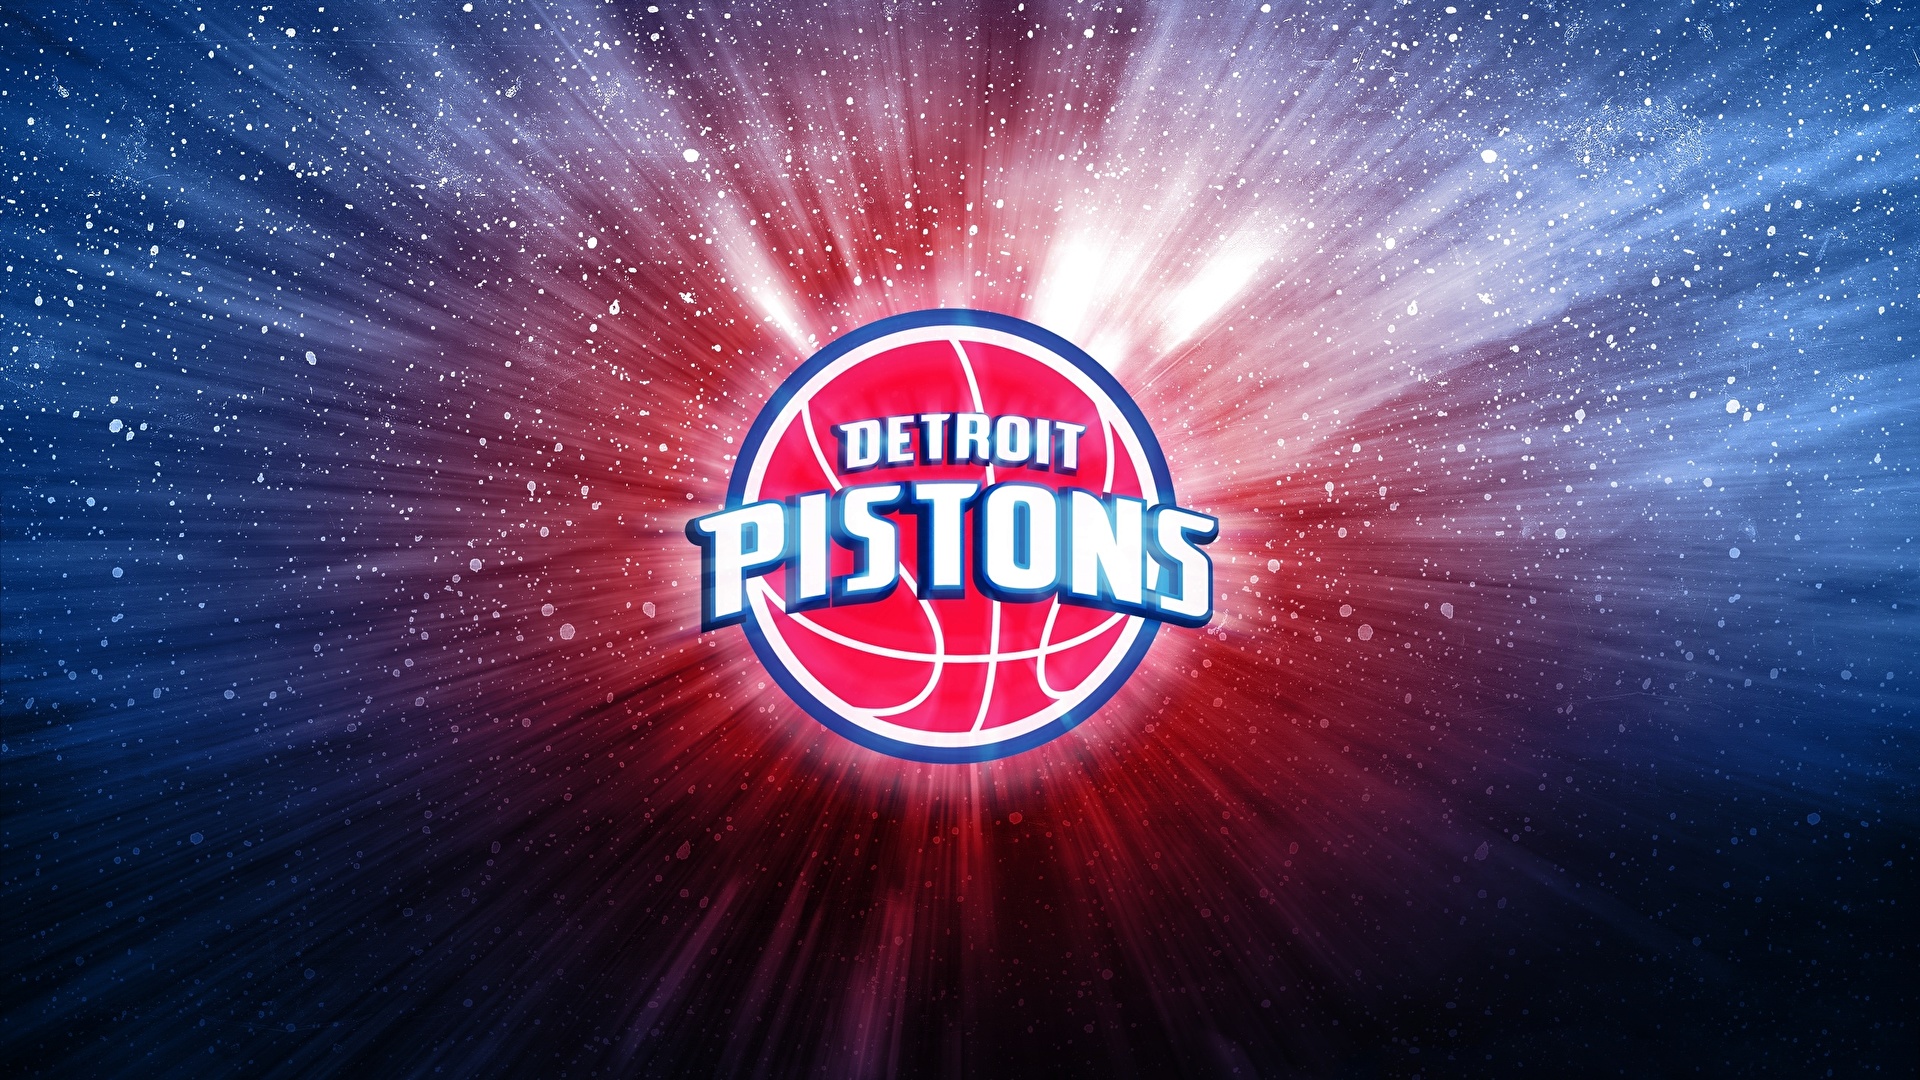 壁紙 1920x1080 バスケットボール ロゴエンブレム Detroit Pistons